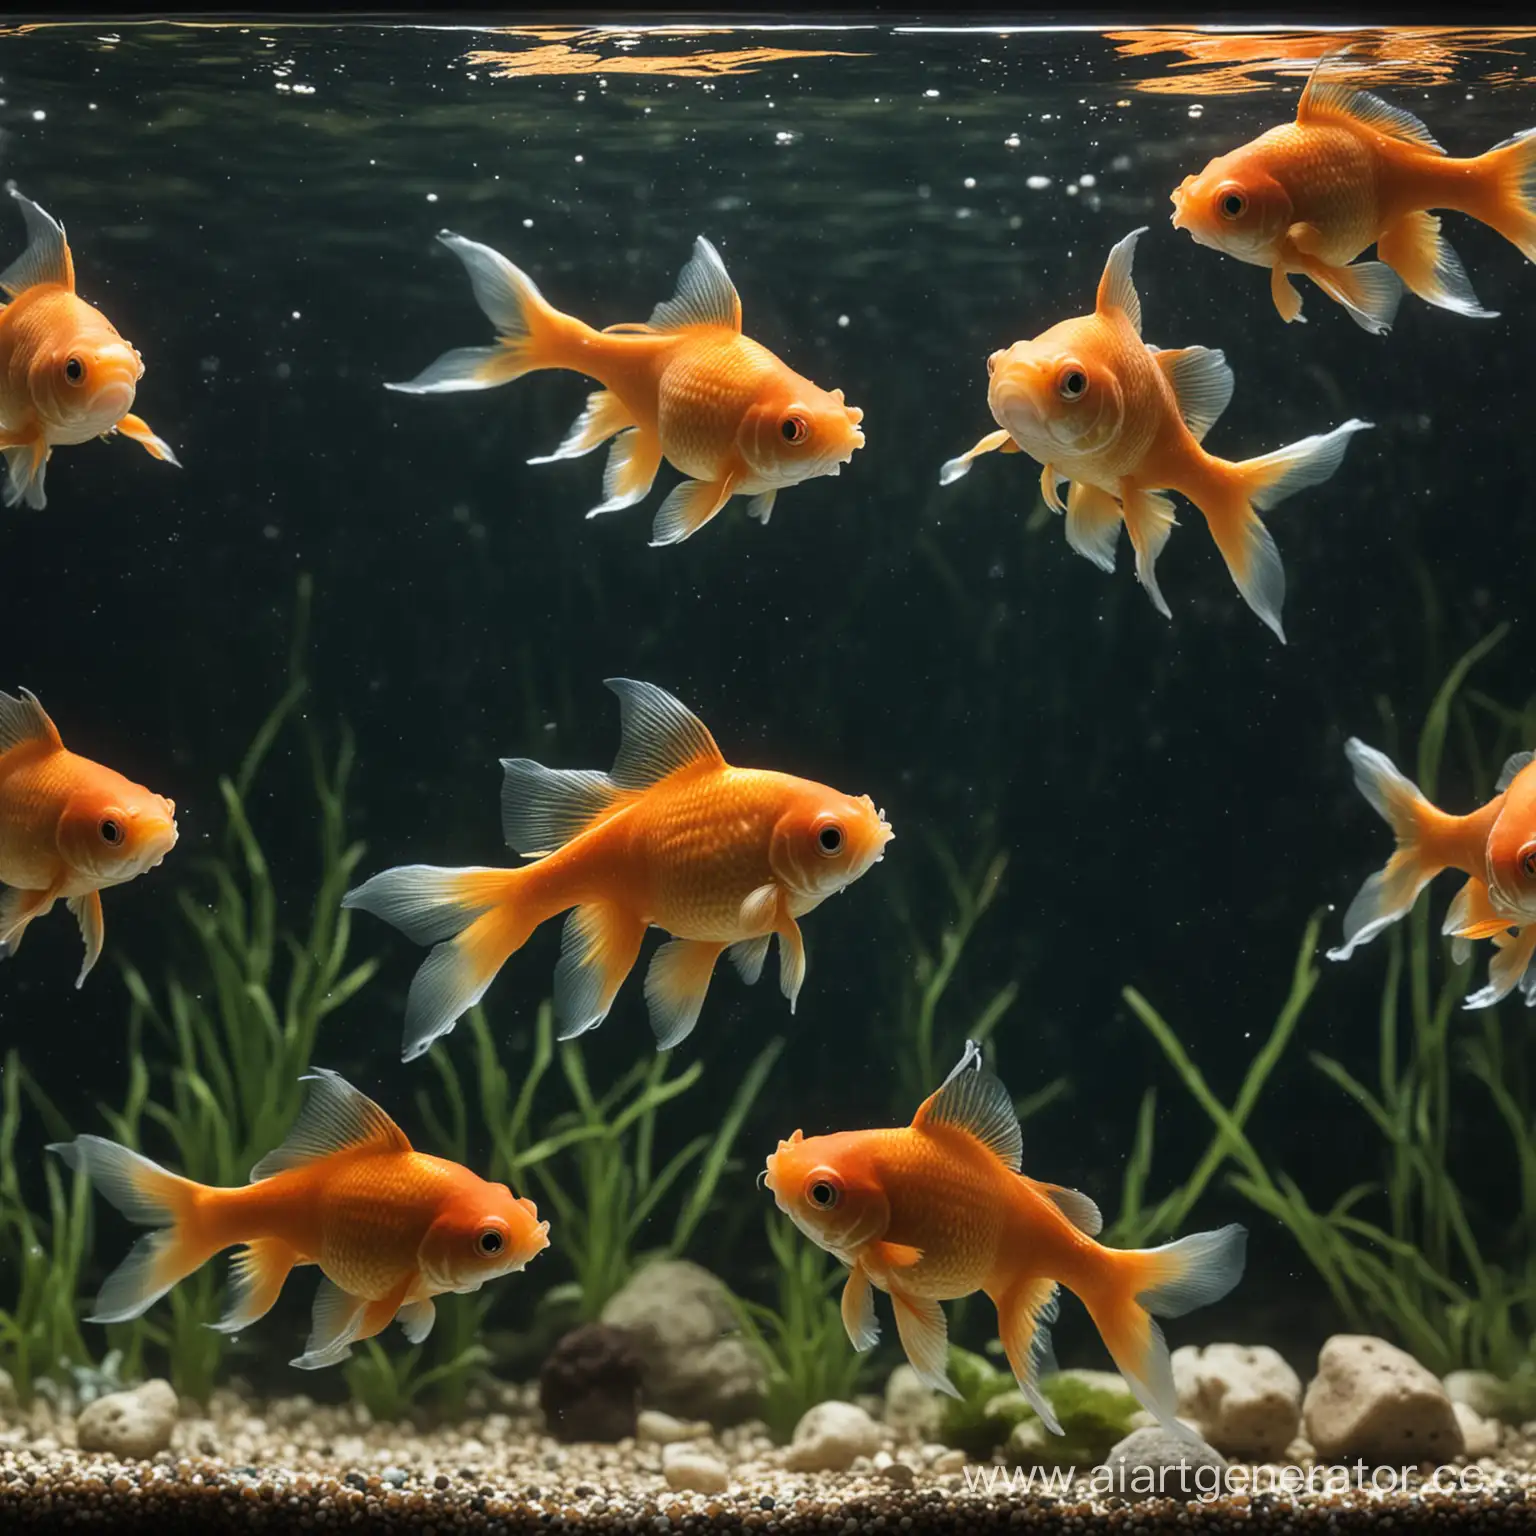 Colorful-Goldfish-Swimming-in-a-Vibrant-Aquarium